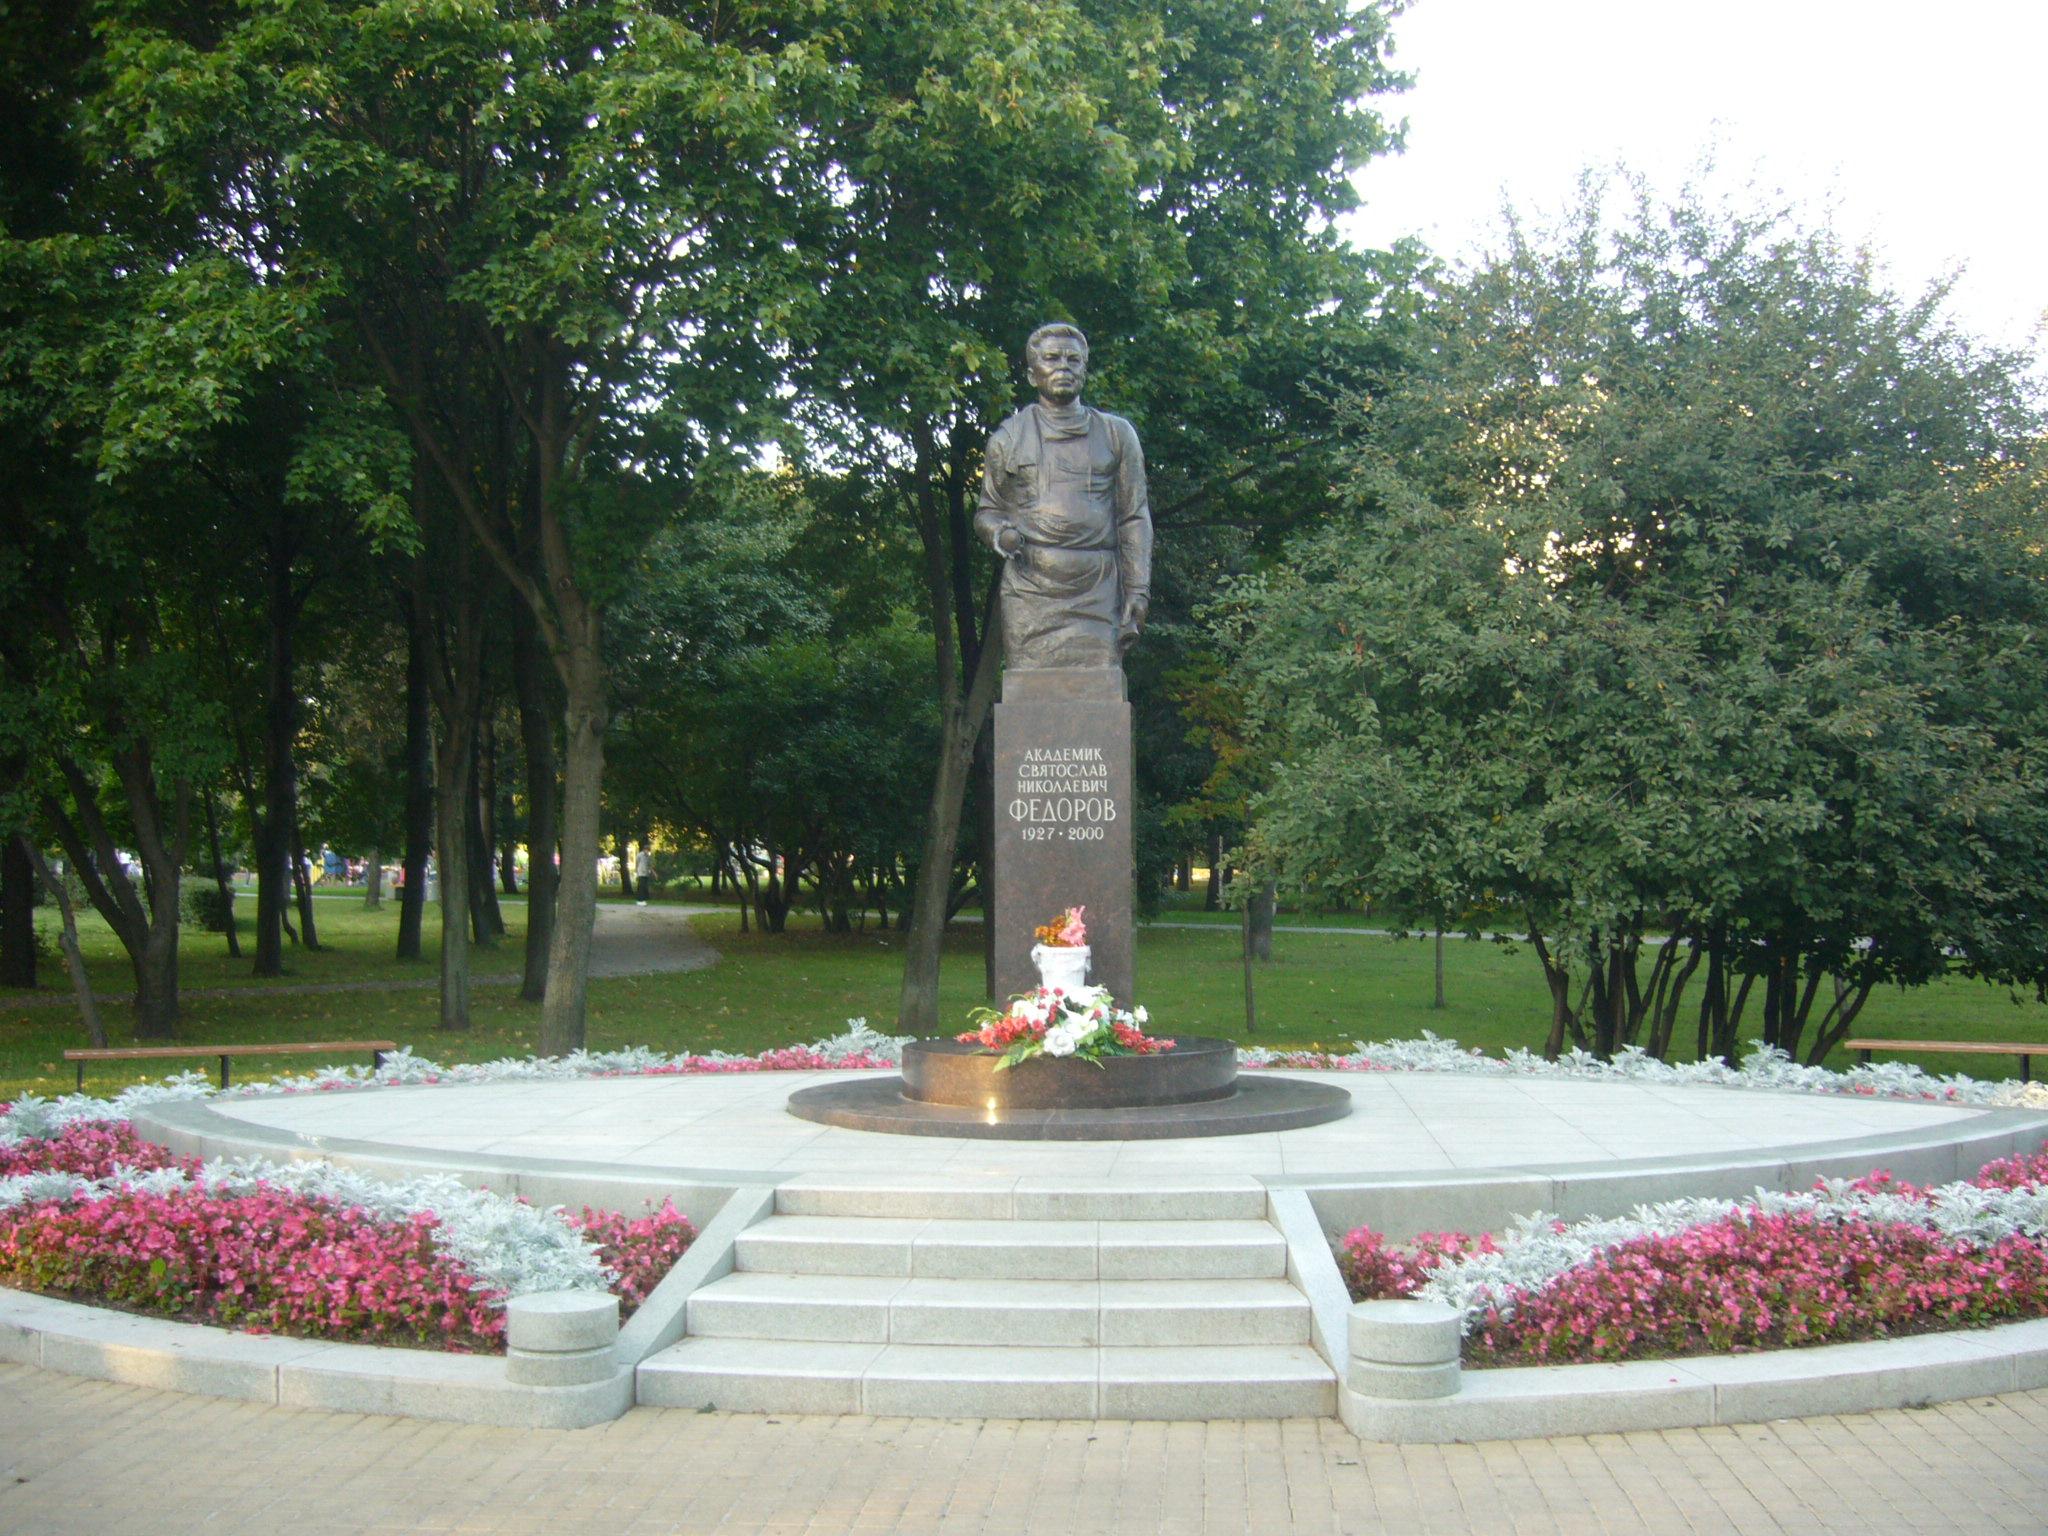 Парк имени Святослава Фёдорова